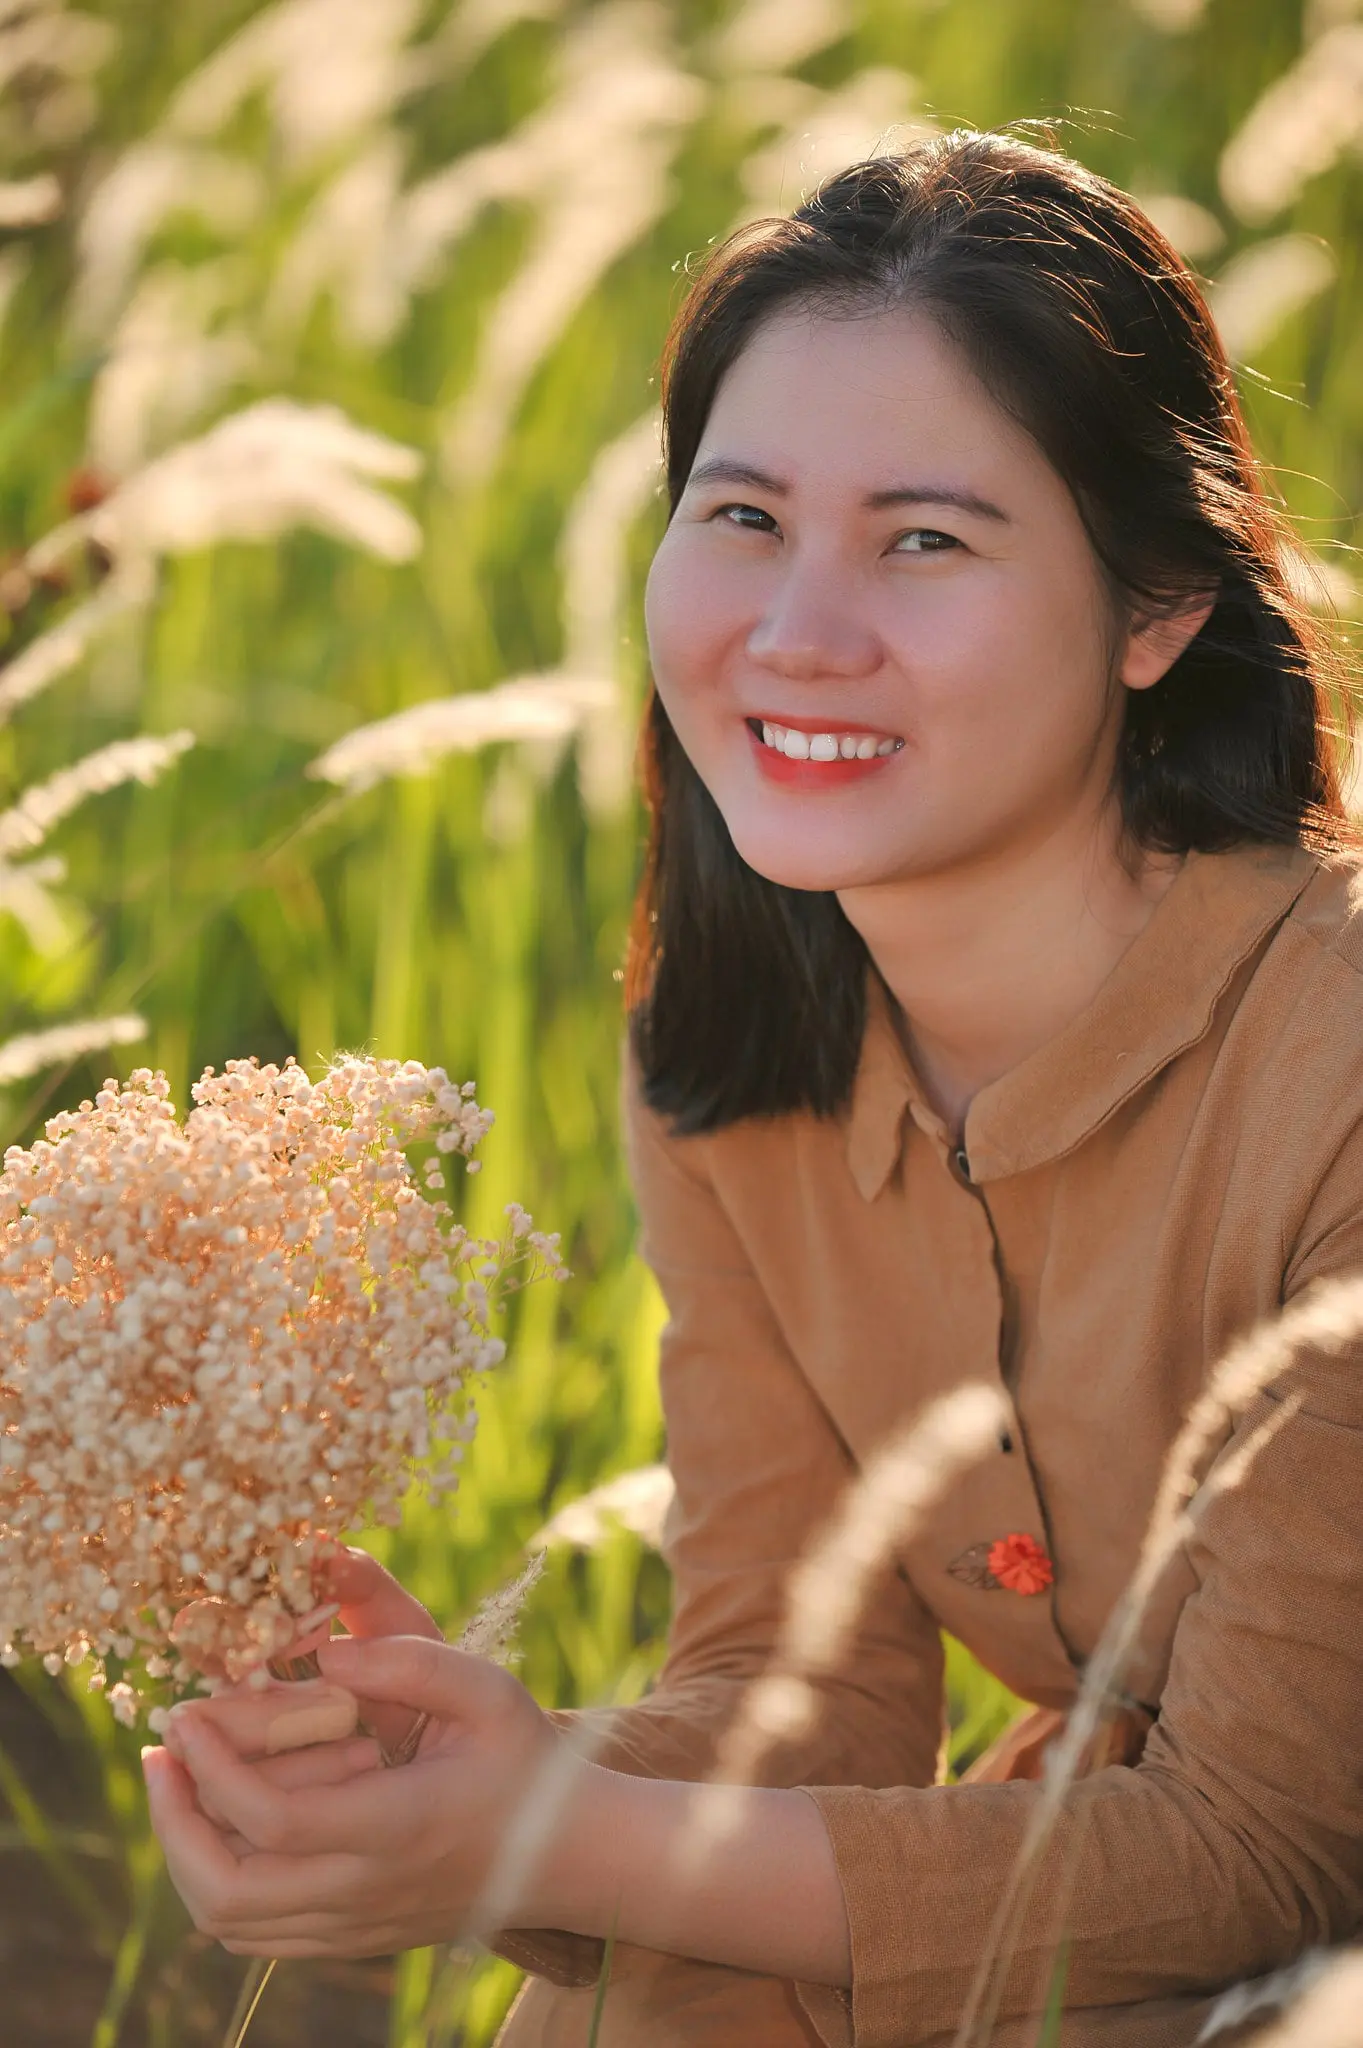 Co lau quan 9 14 min - Góc ảnh cỏ lau quận 2 tuyệt đẹp với nắng chiều - HThao Studio